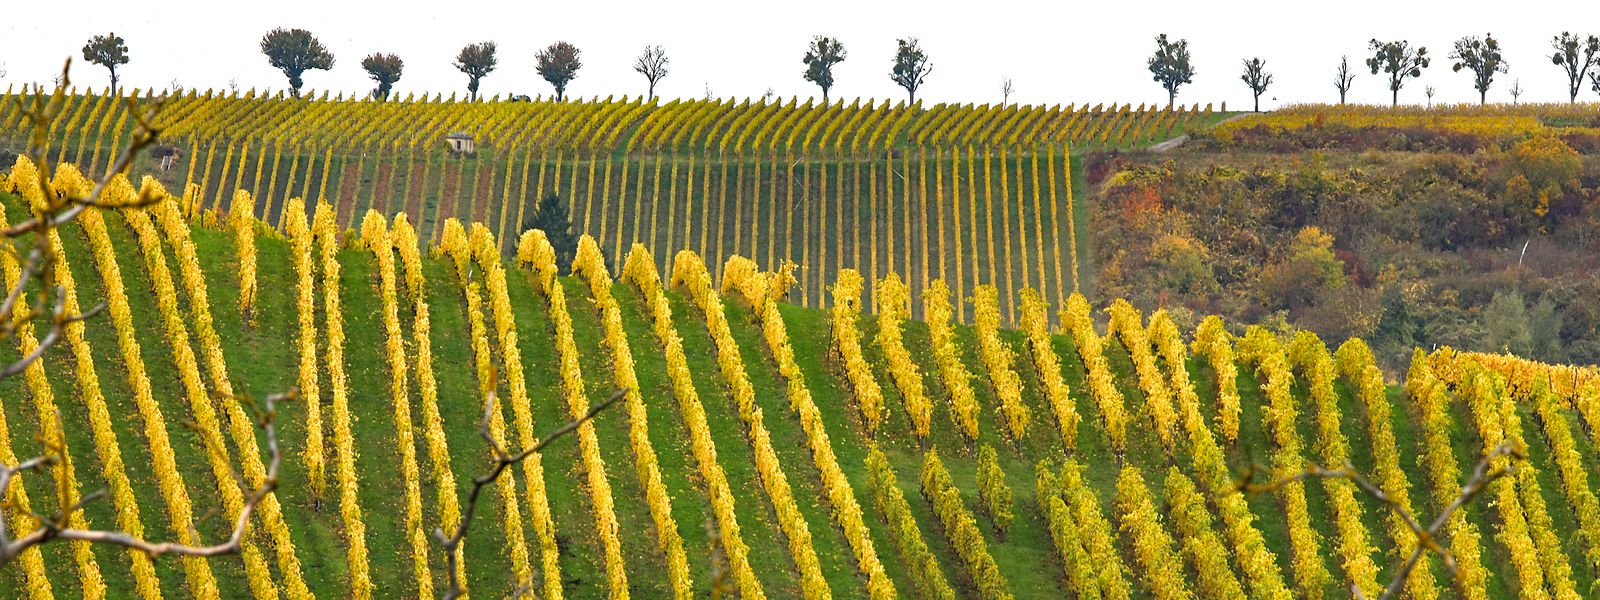 C'est en cette saison que les 1.280 hectares du vignoble luxembourgeois sont les plus beaux.